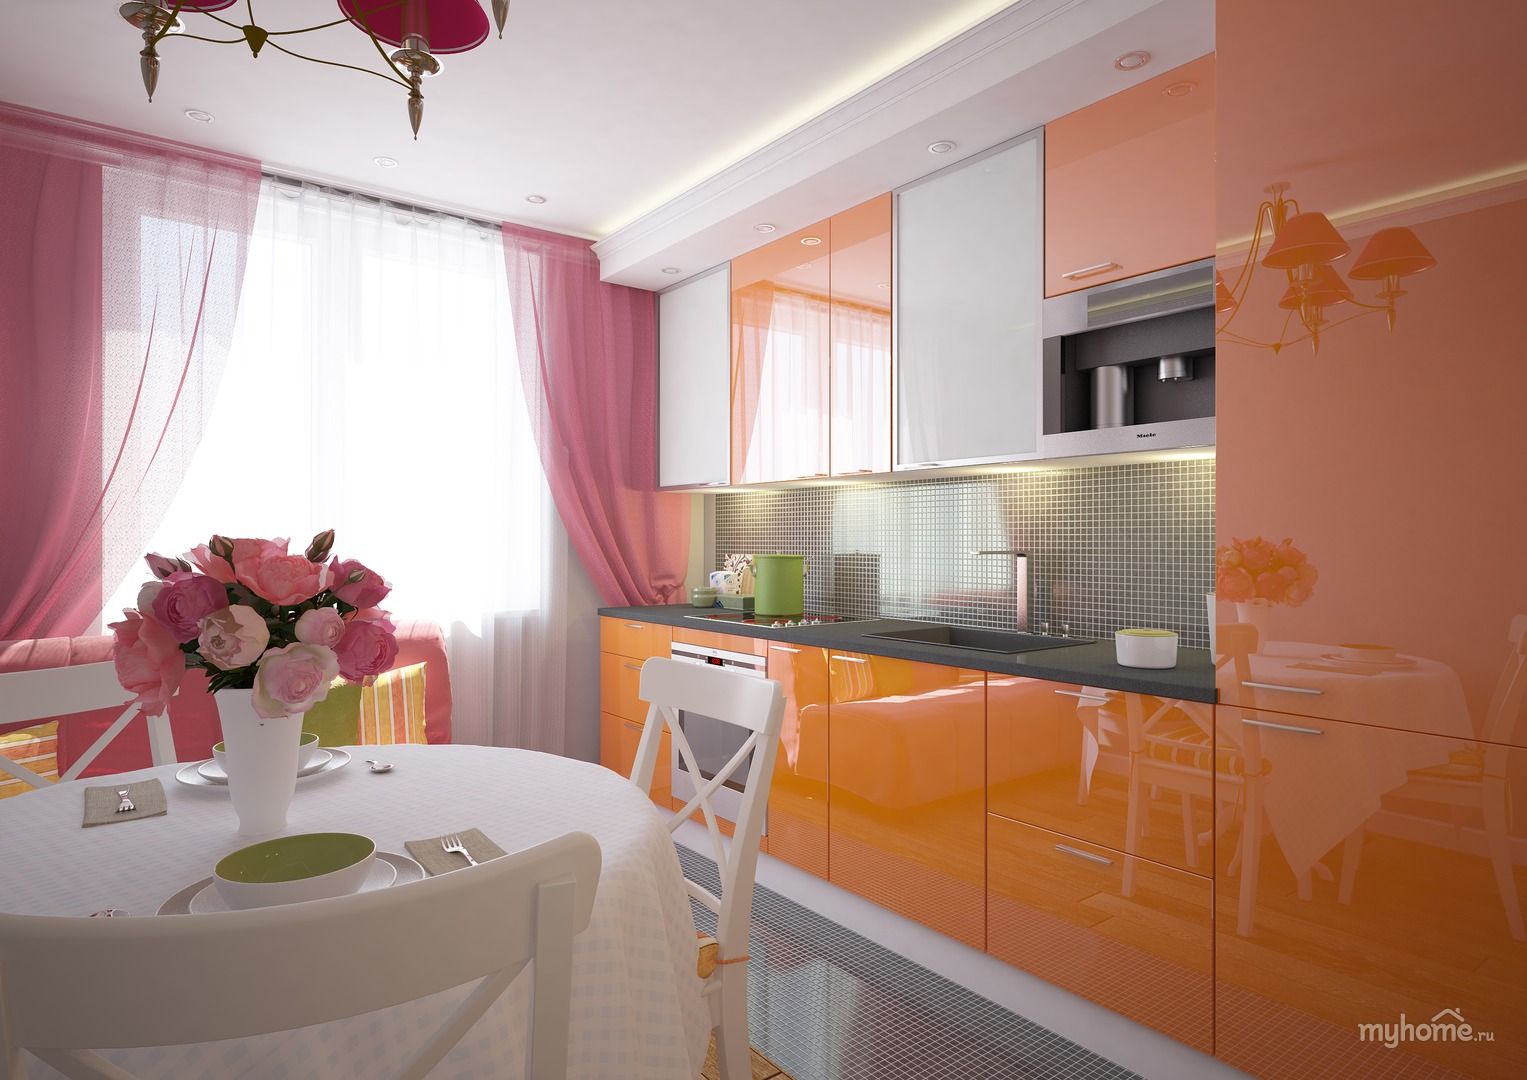 Какой цвет штор на кухню. Кухня в персиковых тонах. Кухня в оранжевых тонах. Кухонный гарнитур персикового цвета. Оранжевая кухня в интерьере.